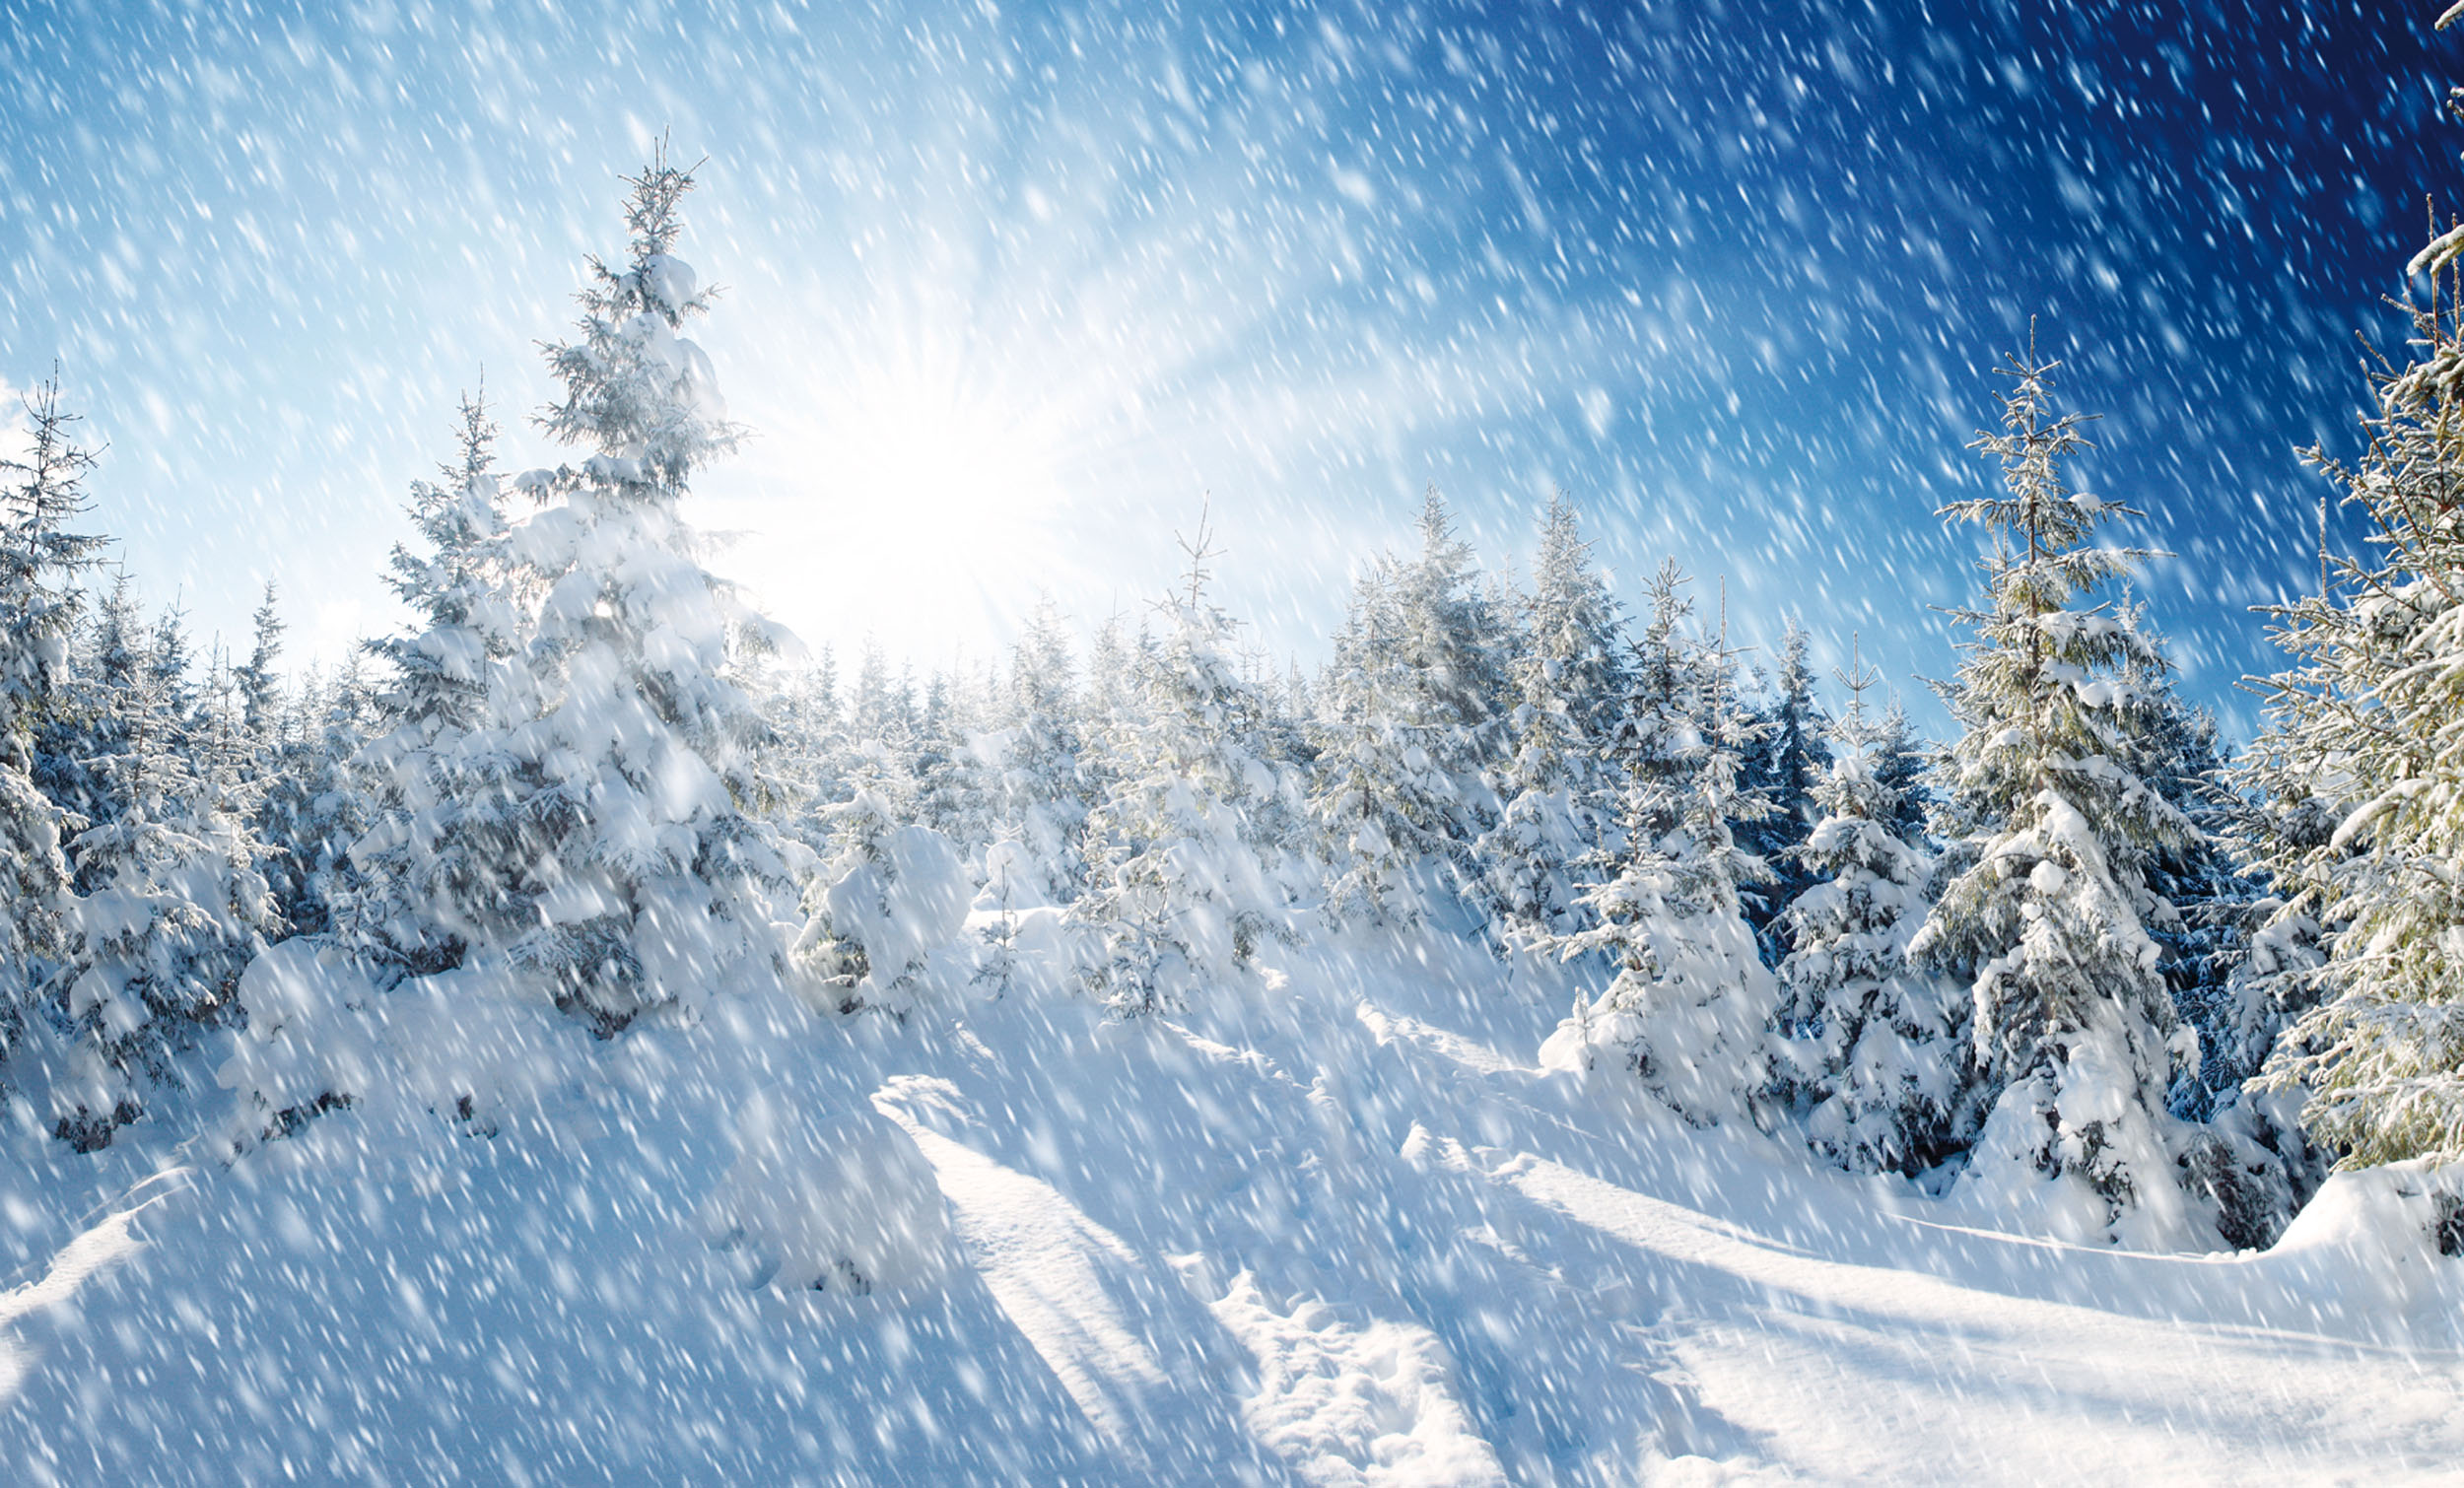 Prachtvoller Winterwald:Millionen Schneekristalle funkeln und glitzern bei jeder Bewegung. © leonid_tit/iStockphoto.com